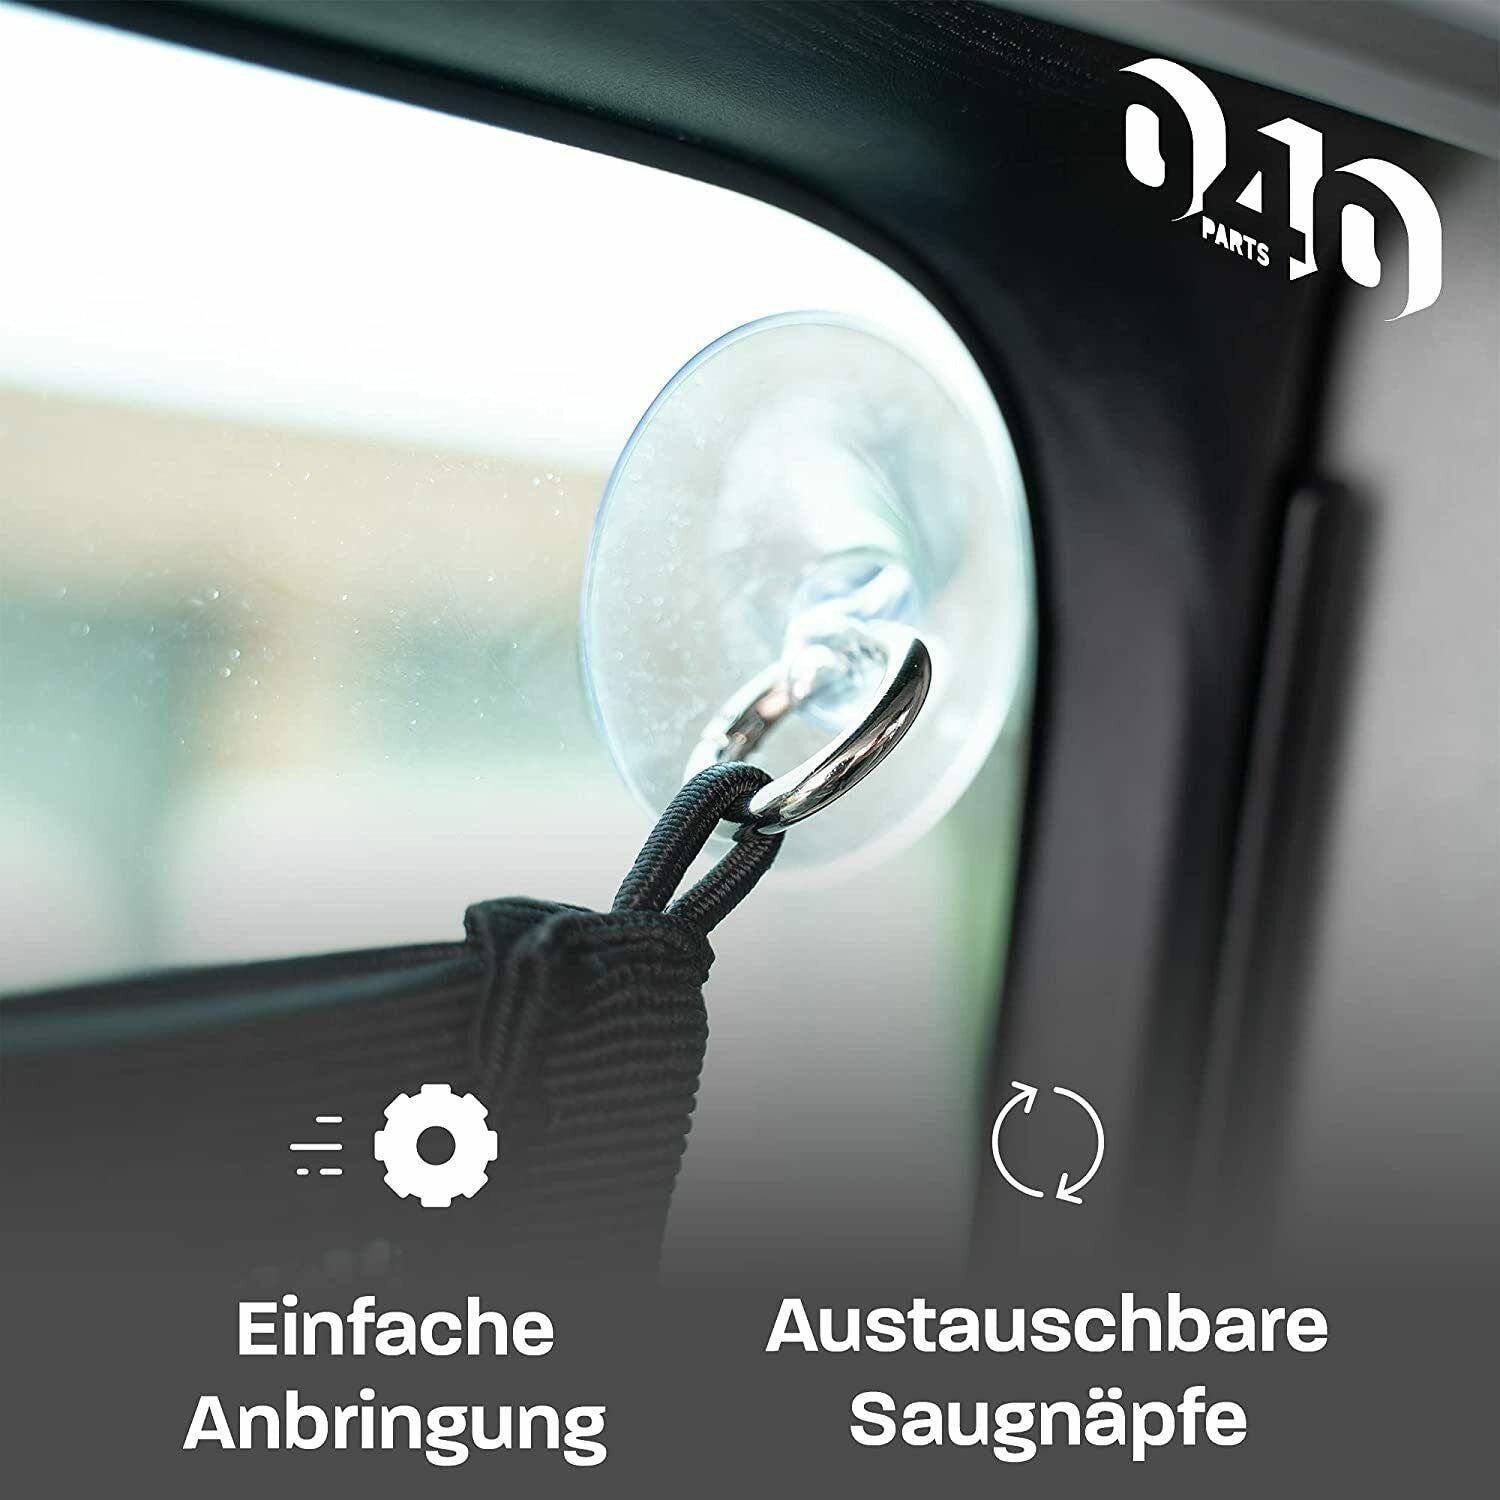 040 Parts Aufbewahrungs Netz für das Küchenfenster von VW T5 T6 Bulli, Multivan - Mixcover - 040 parts